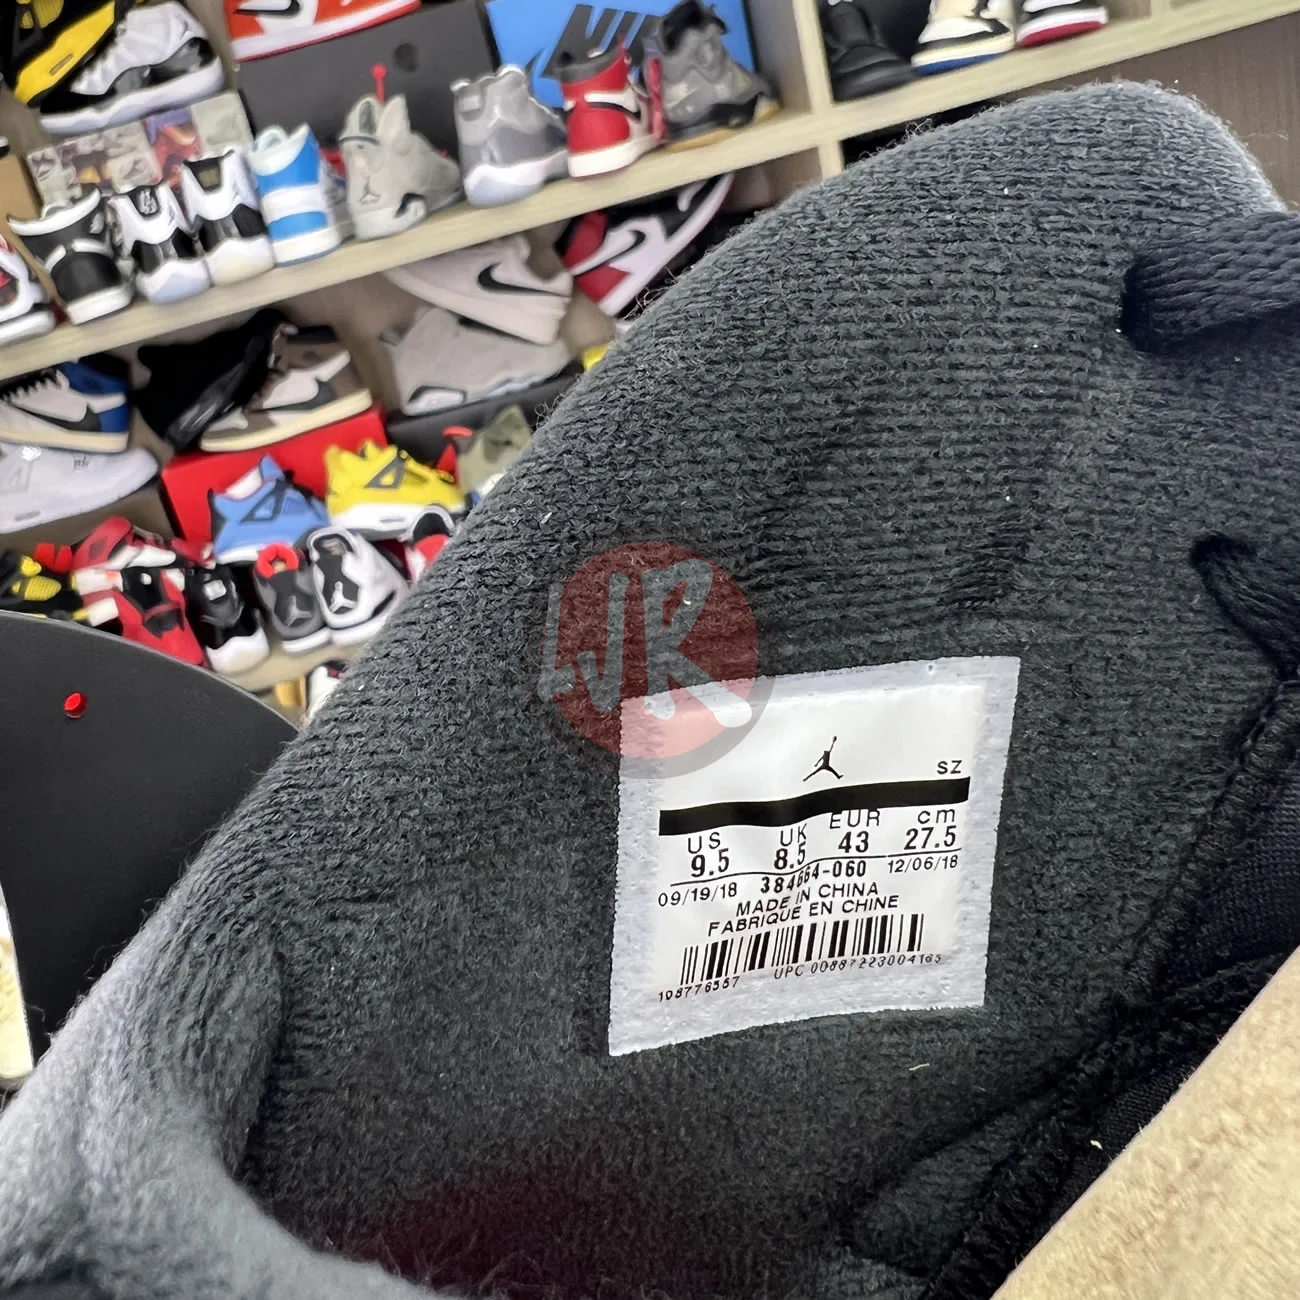 Air Jordan 6 Retro Black Infrared 2019 384664 060 Ljr Sneakers (9) - bc-ljr.net